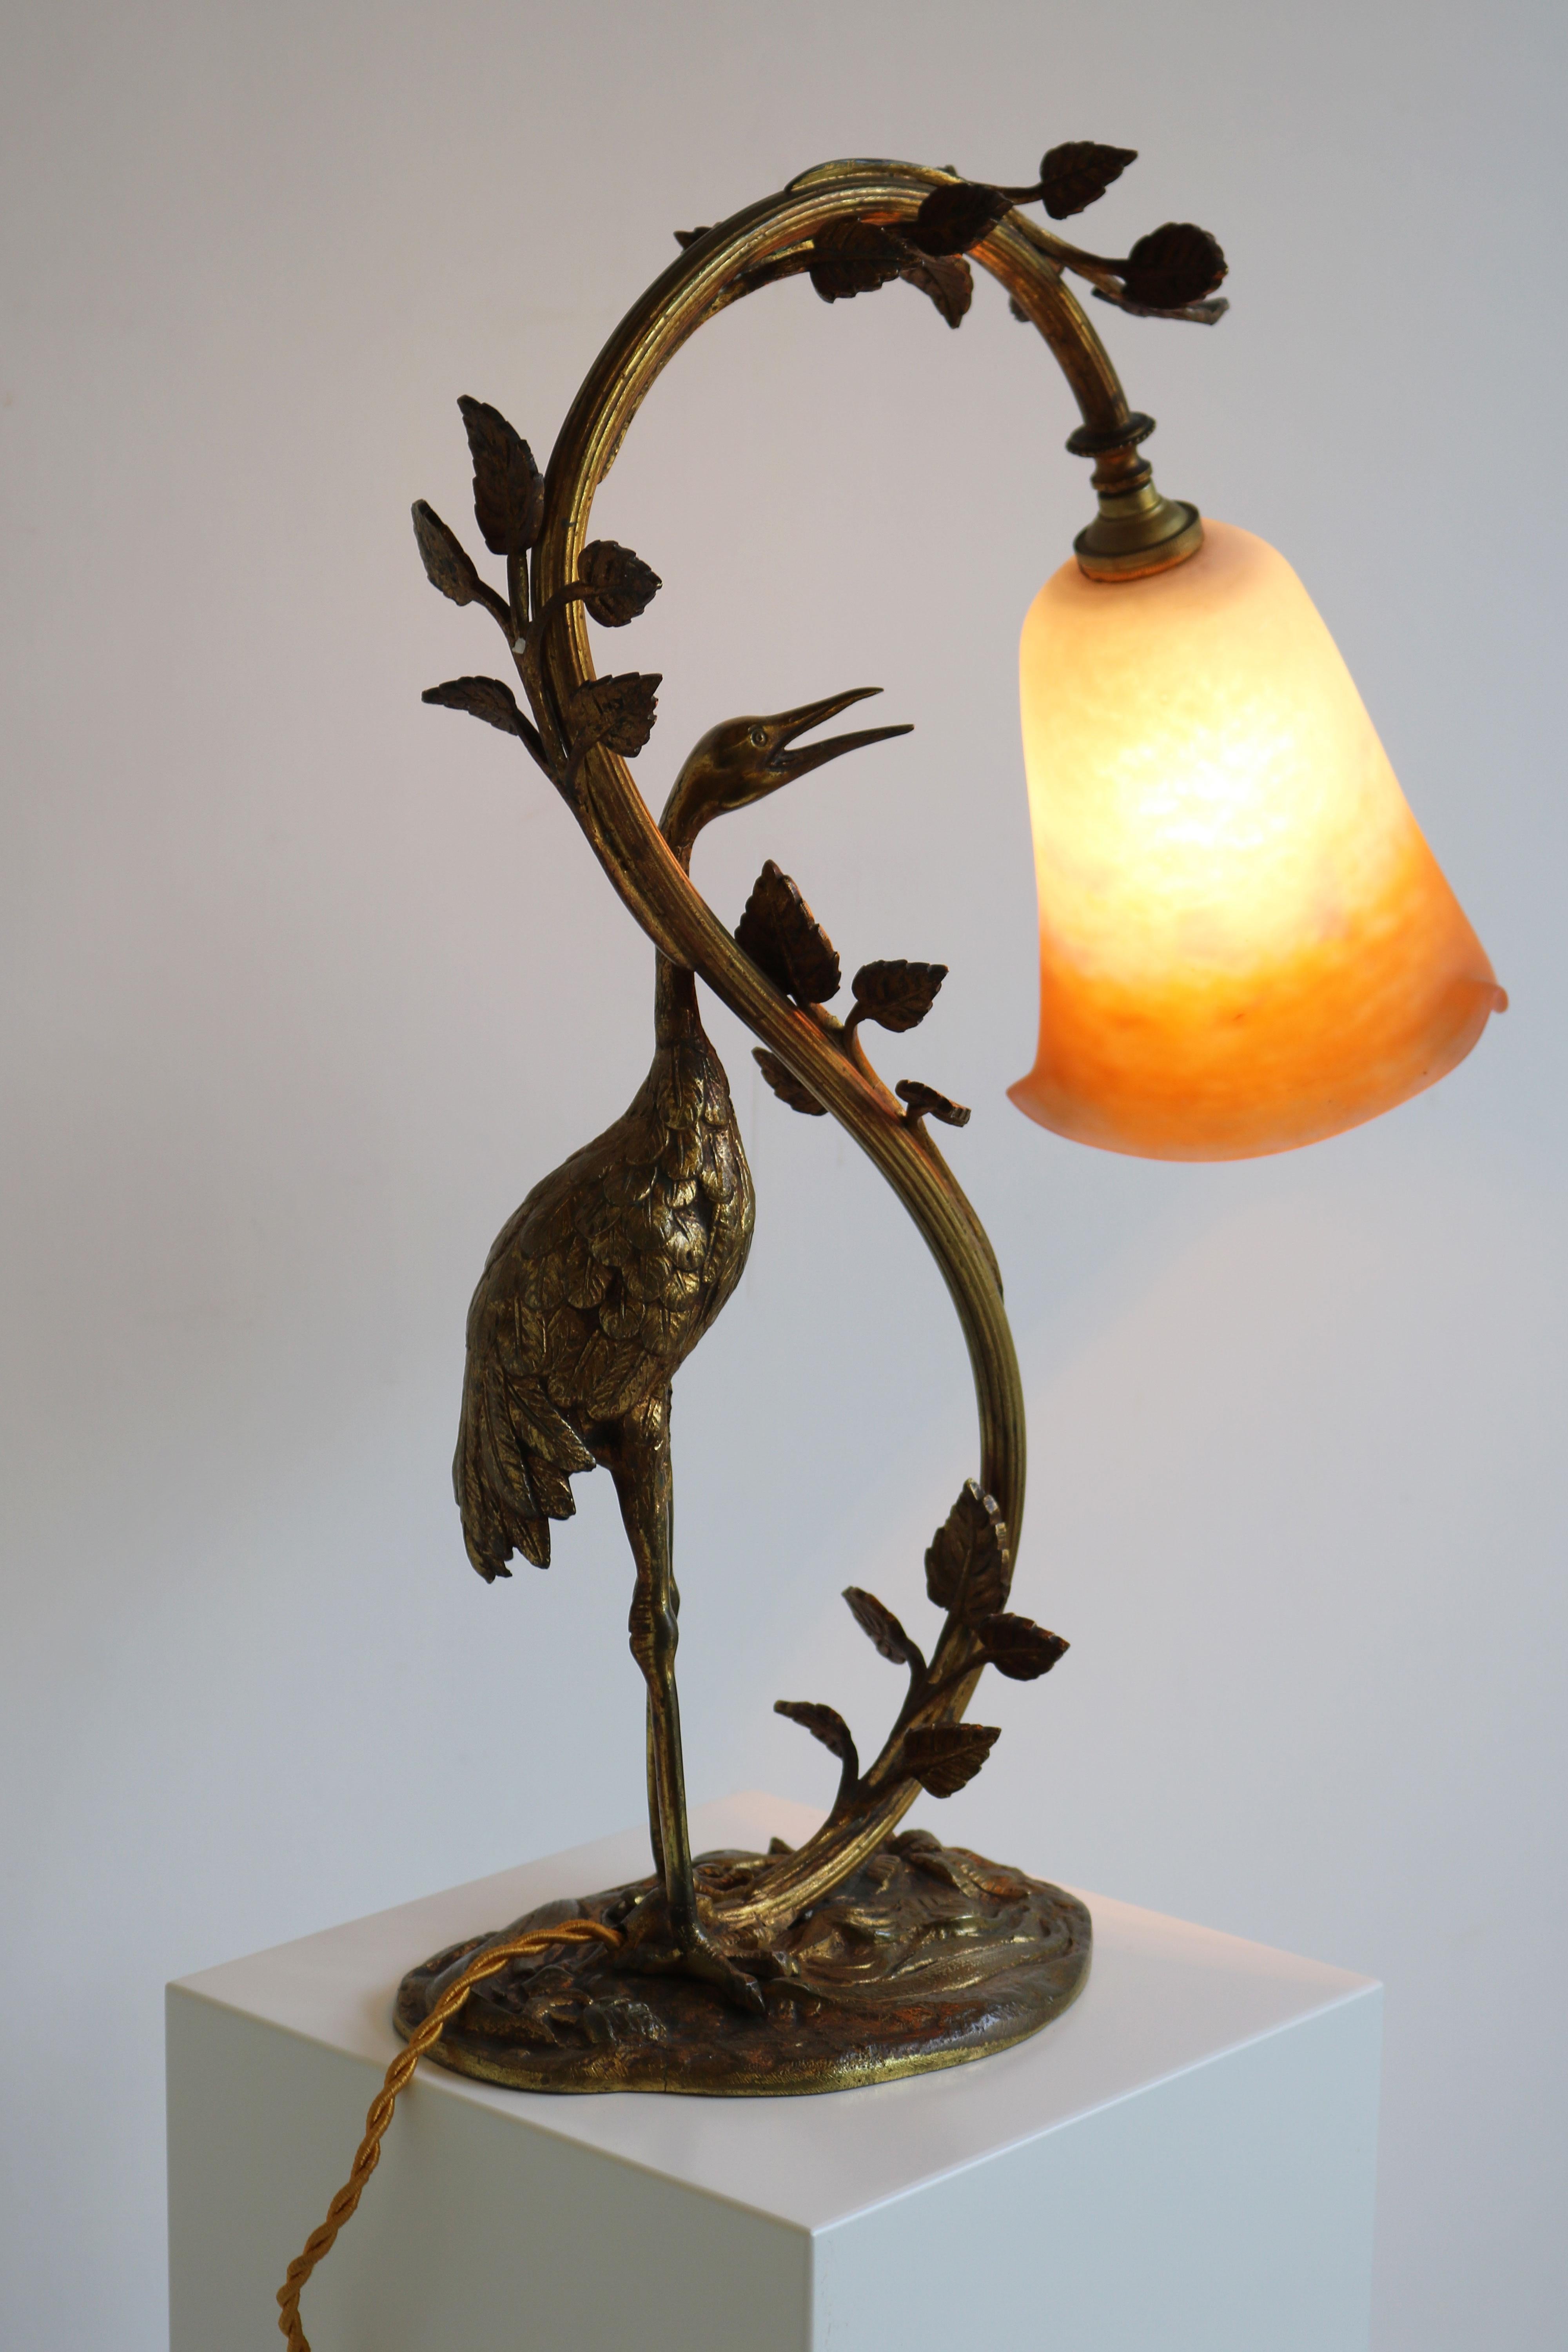 Antique French Art Nouveau Table Lamp Heron by Degue 1920 Pate De Verre Bronze  For Sale 1